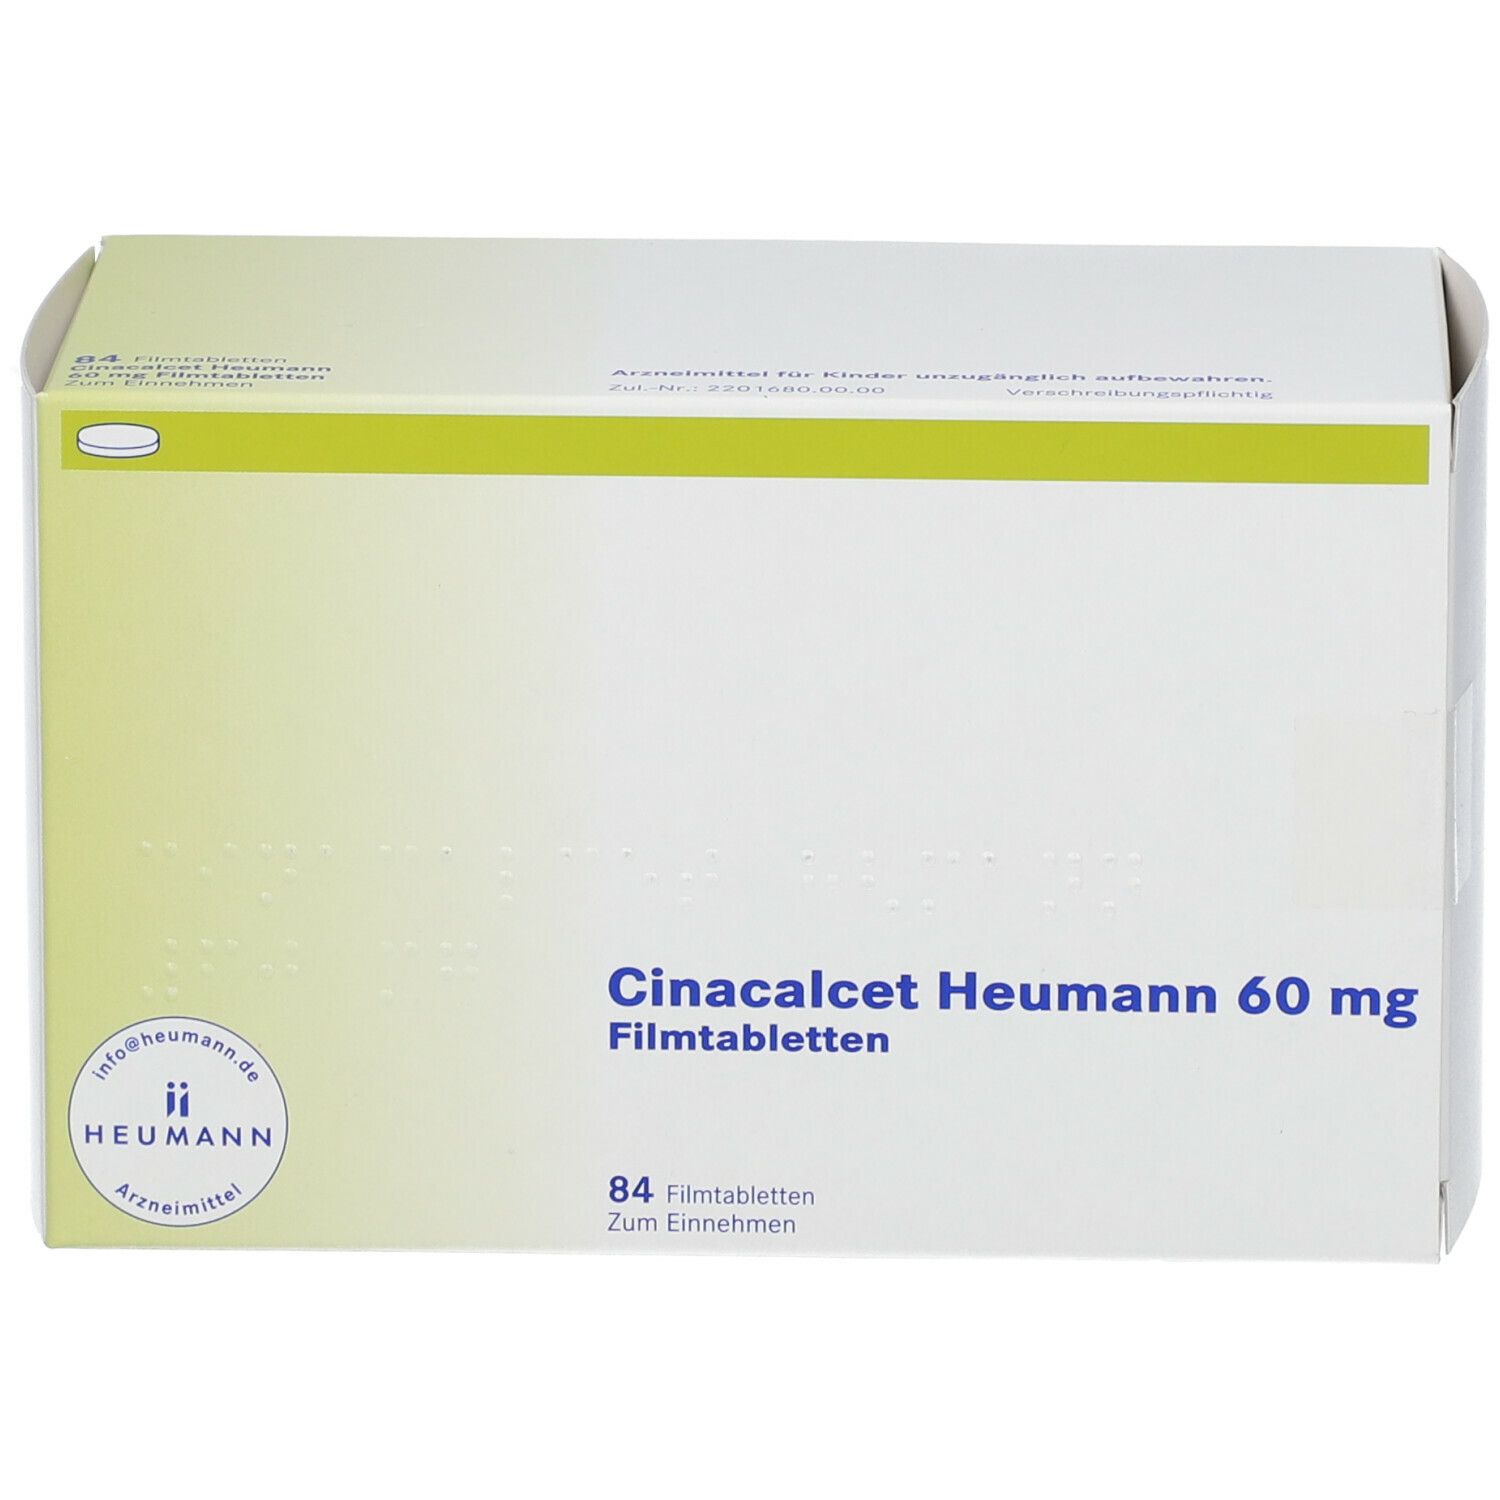 Cinacalcet Heumann 60 mg